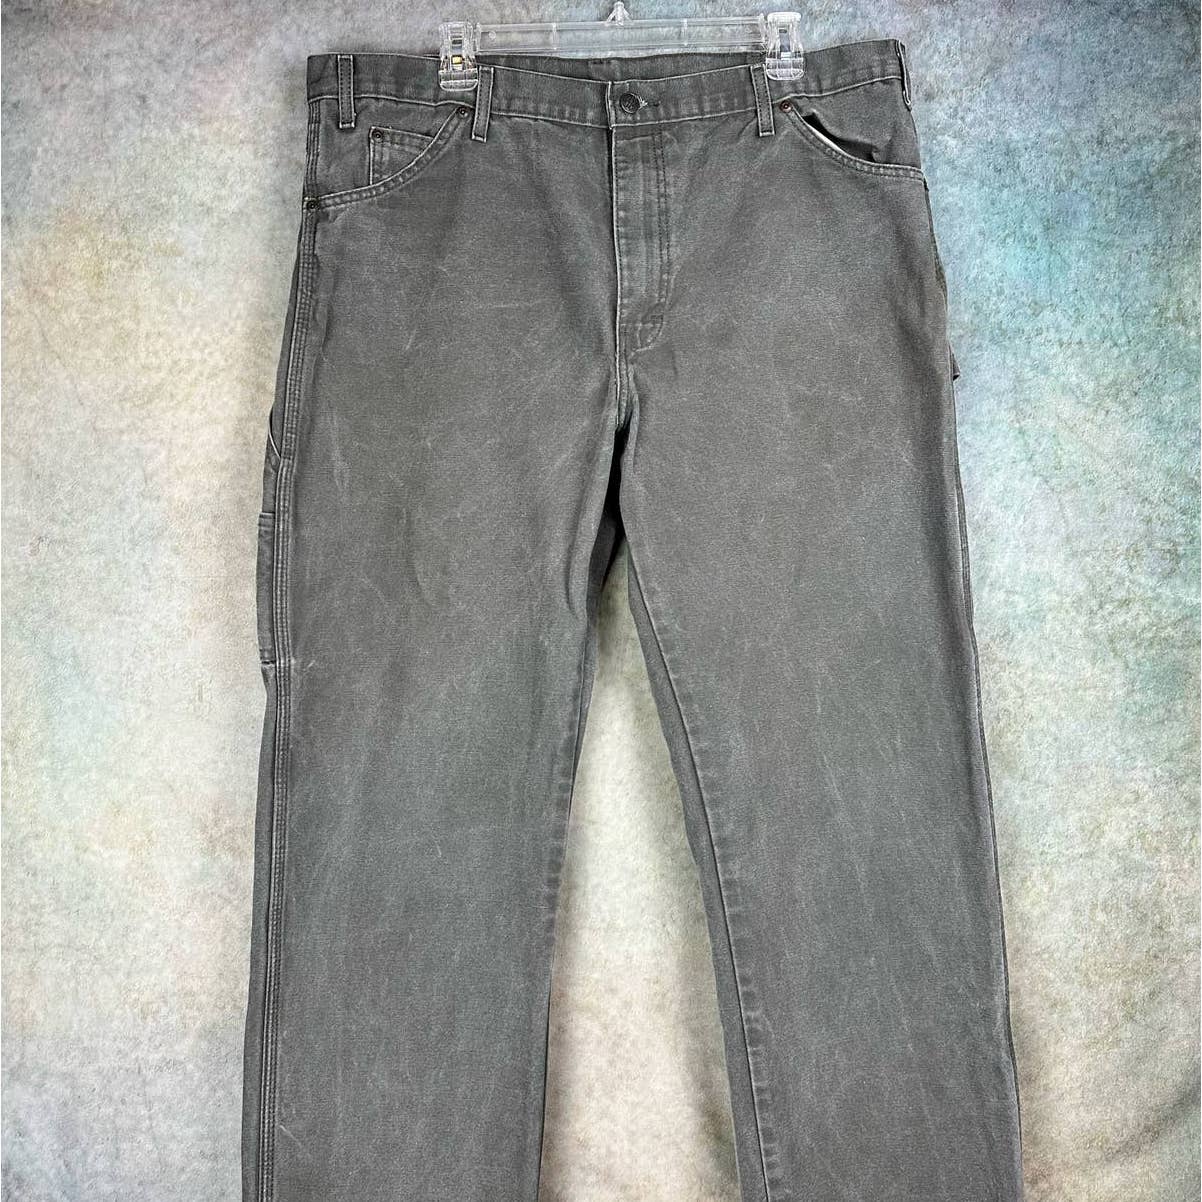 Vintage Dickies Carpenter Pants 38x32